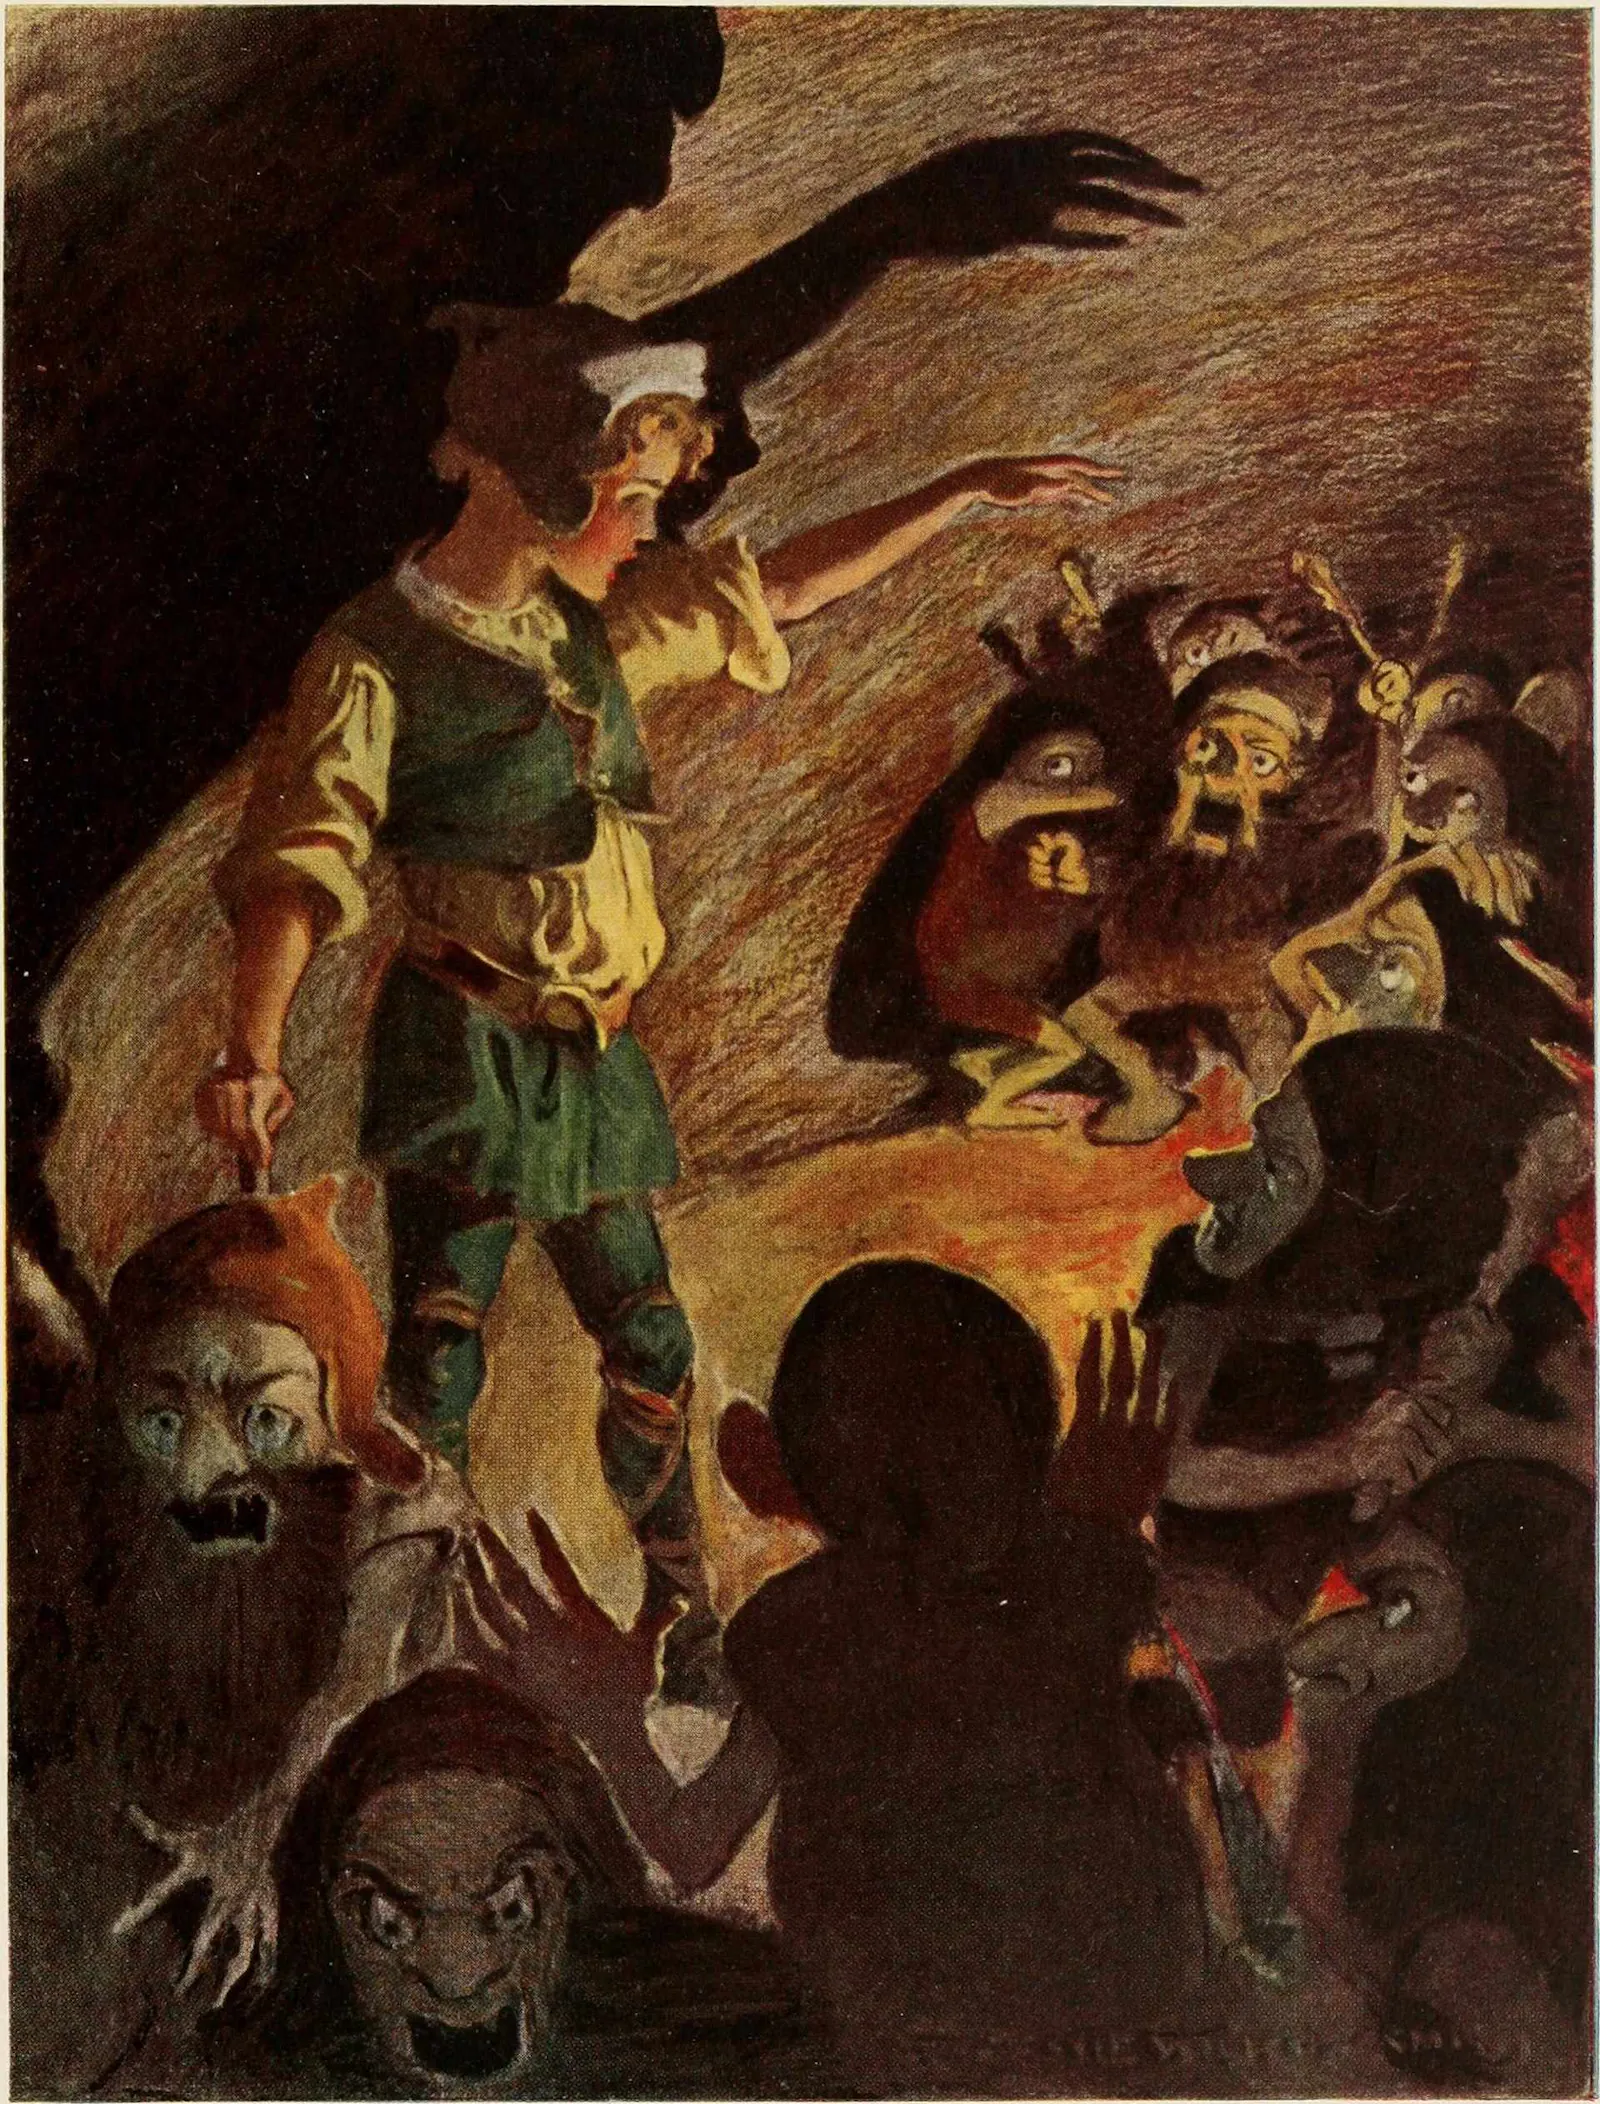 Curdie vertreibt die Kobolde, The princess and the goblin, Illustration von Jessie Willcox Smith,1920, gemeinfrei.